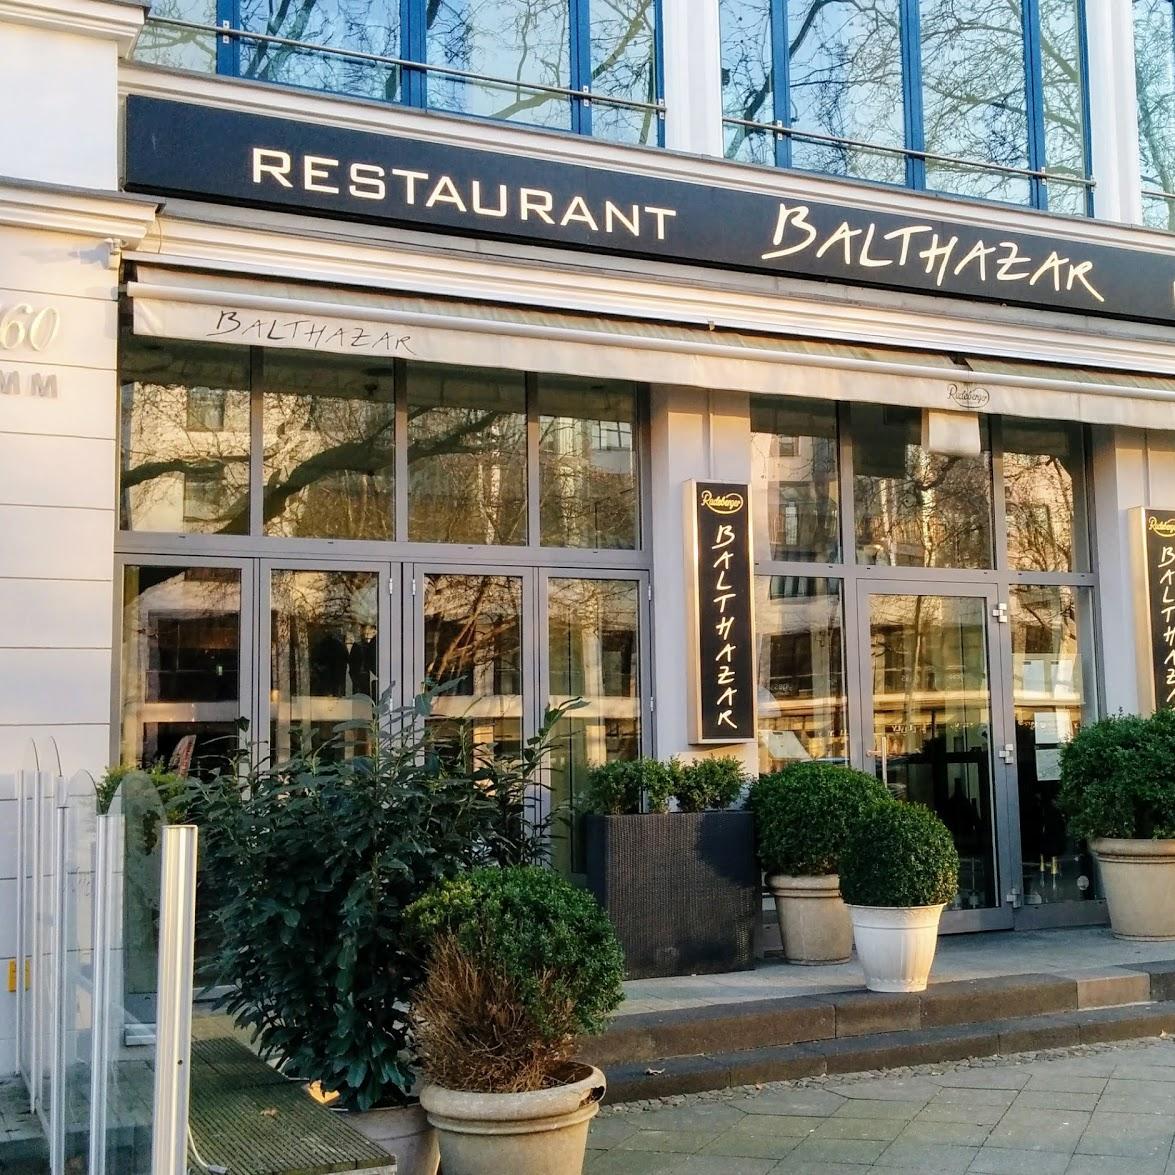 Restaurant "Restaurant Balthazar am Kurfürstendamm" in Berlin